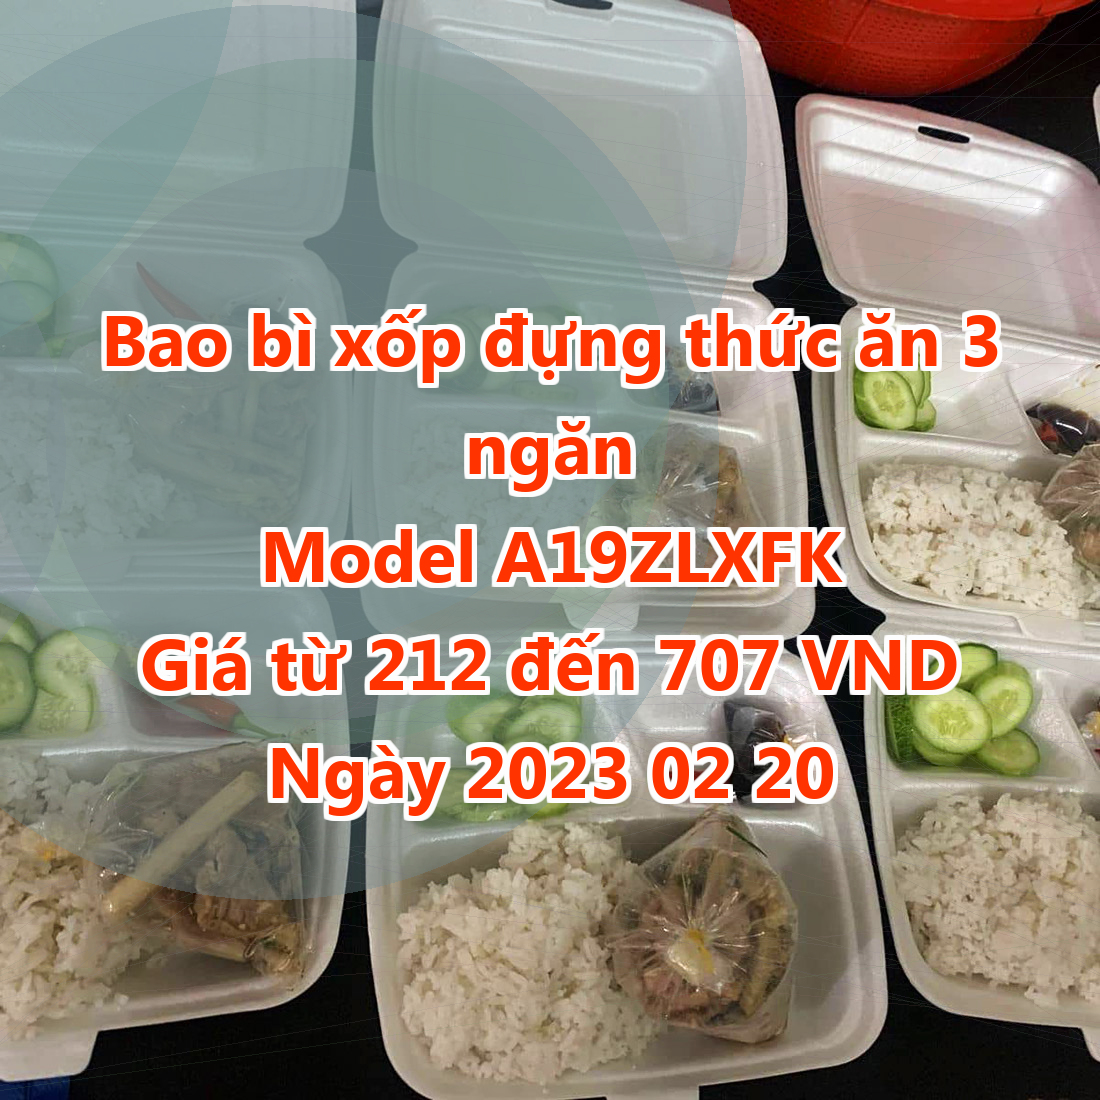 Bao bì xốp đựng thức ăn 3 ngăn - Model A19ZLXFK - Giá 212 đồng